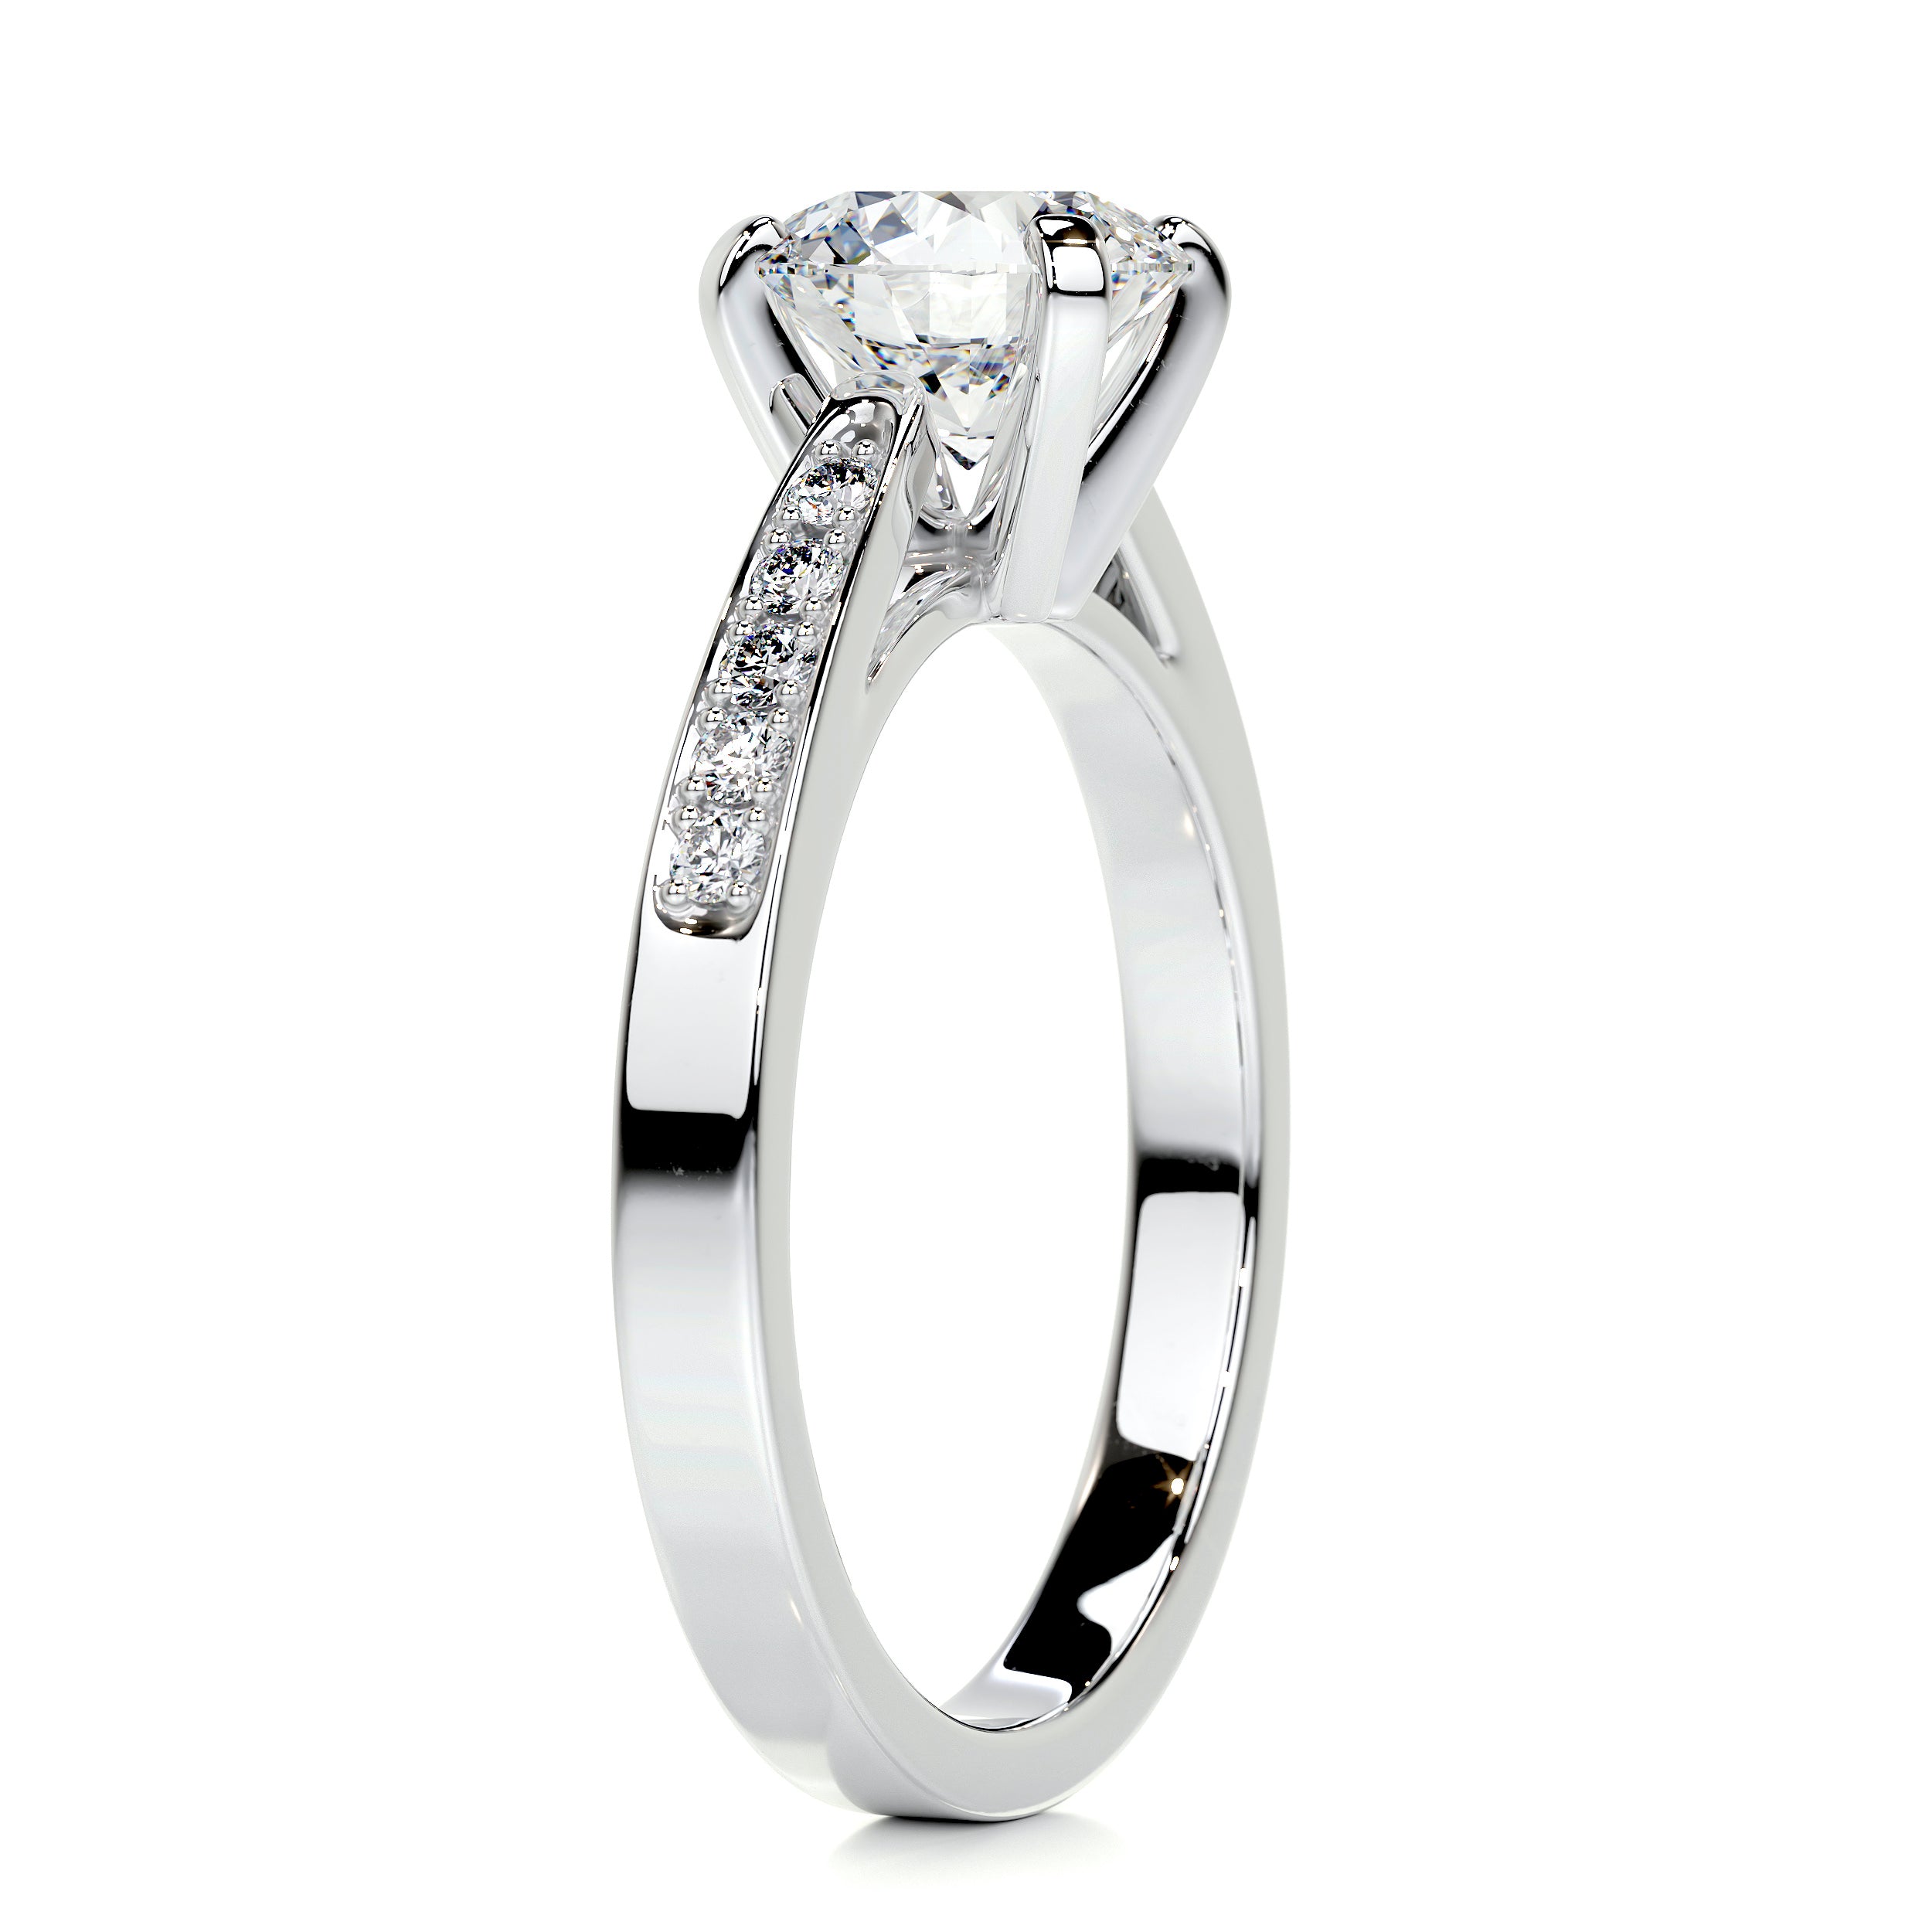 Margaret Diamond Engagement Ring -14K White Gold